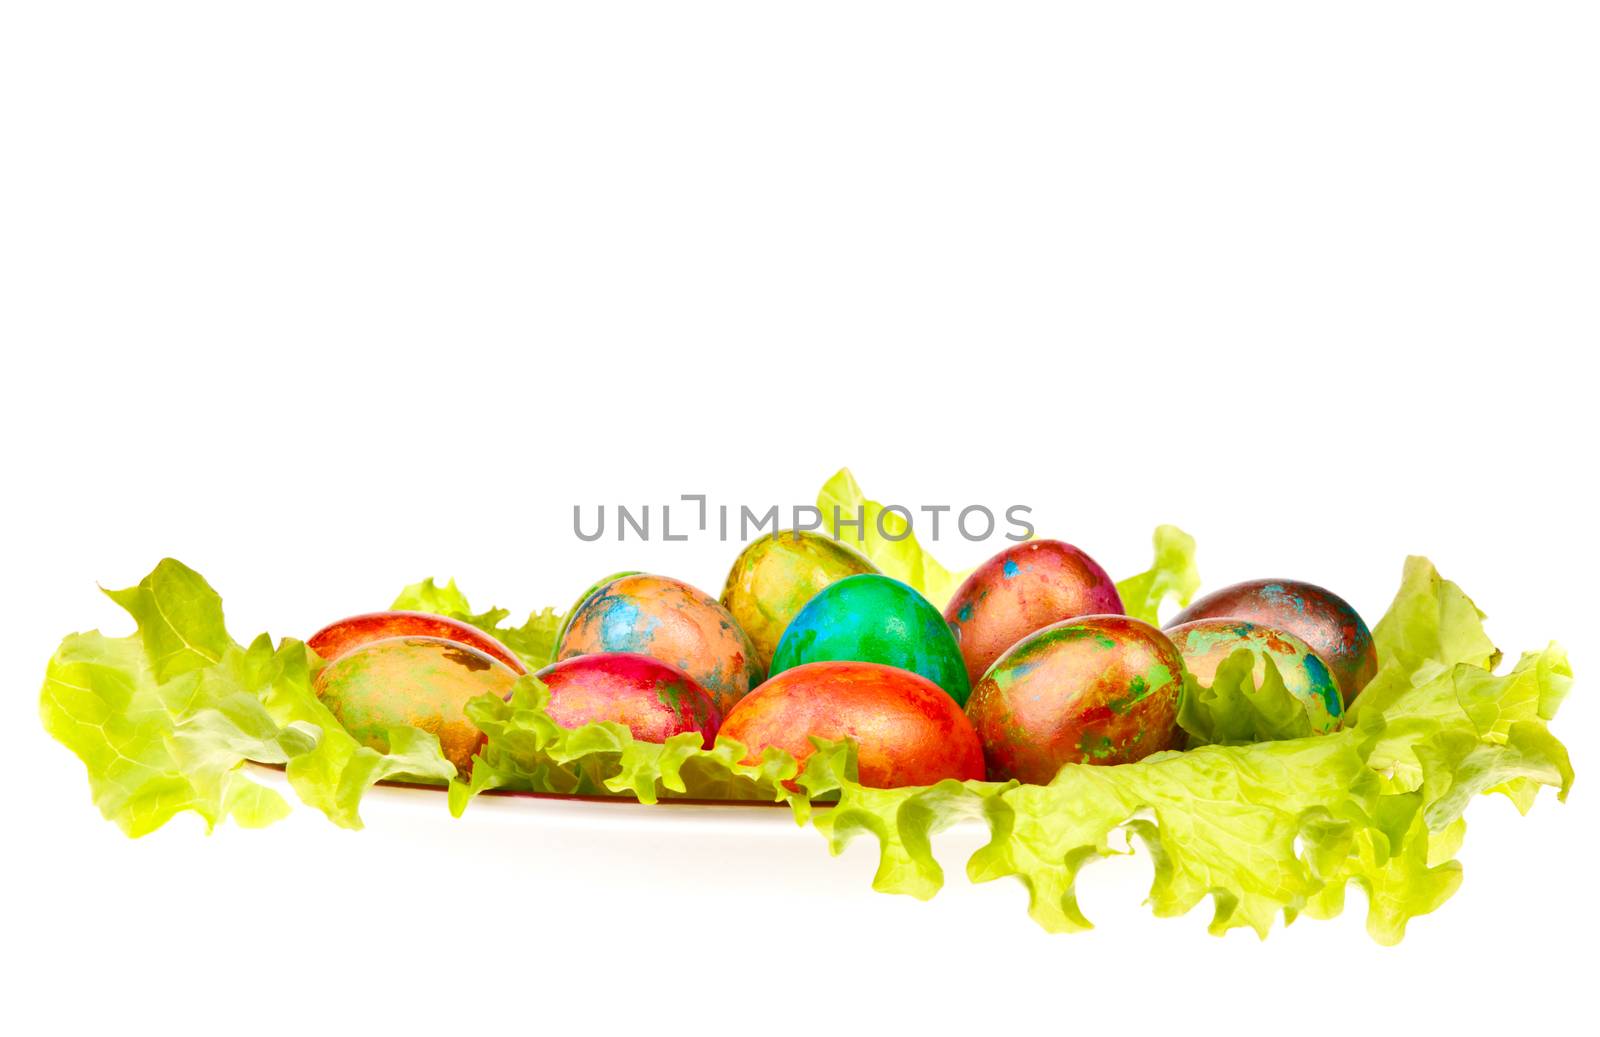 Easter eggs by naumoid